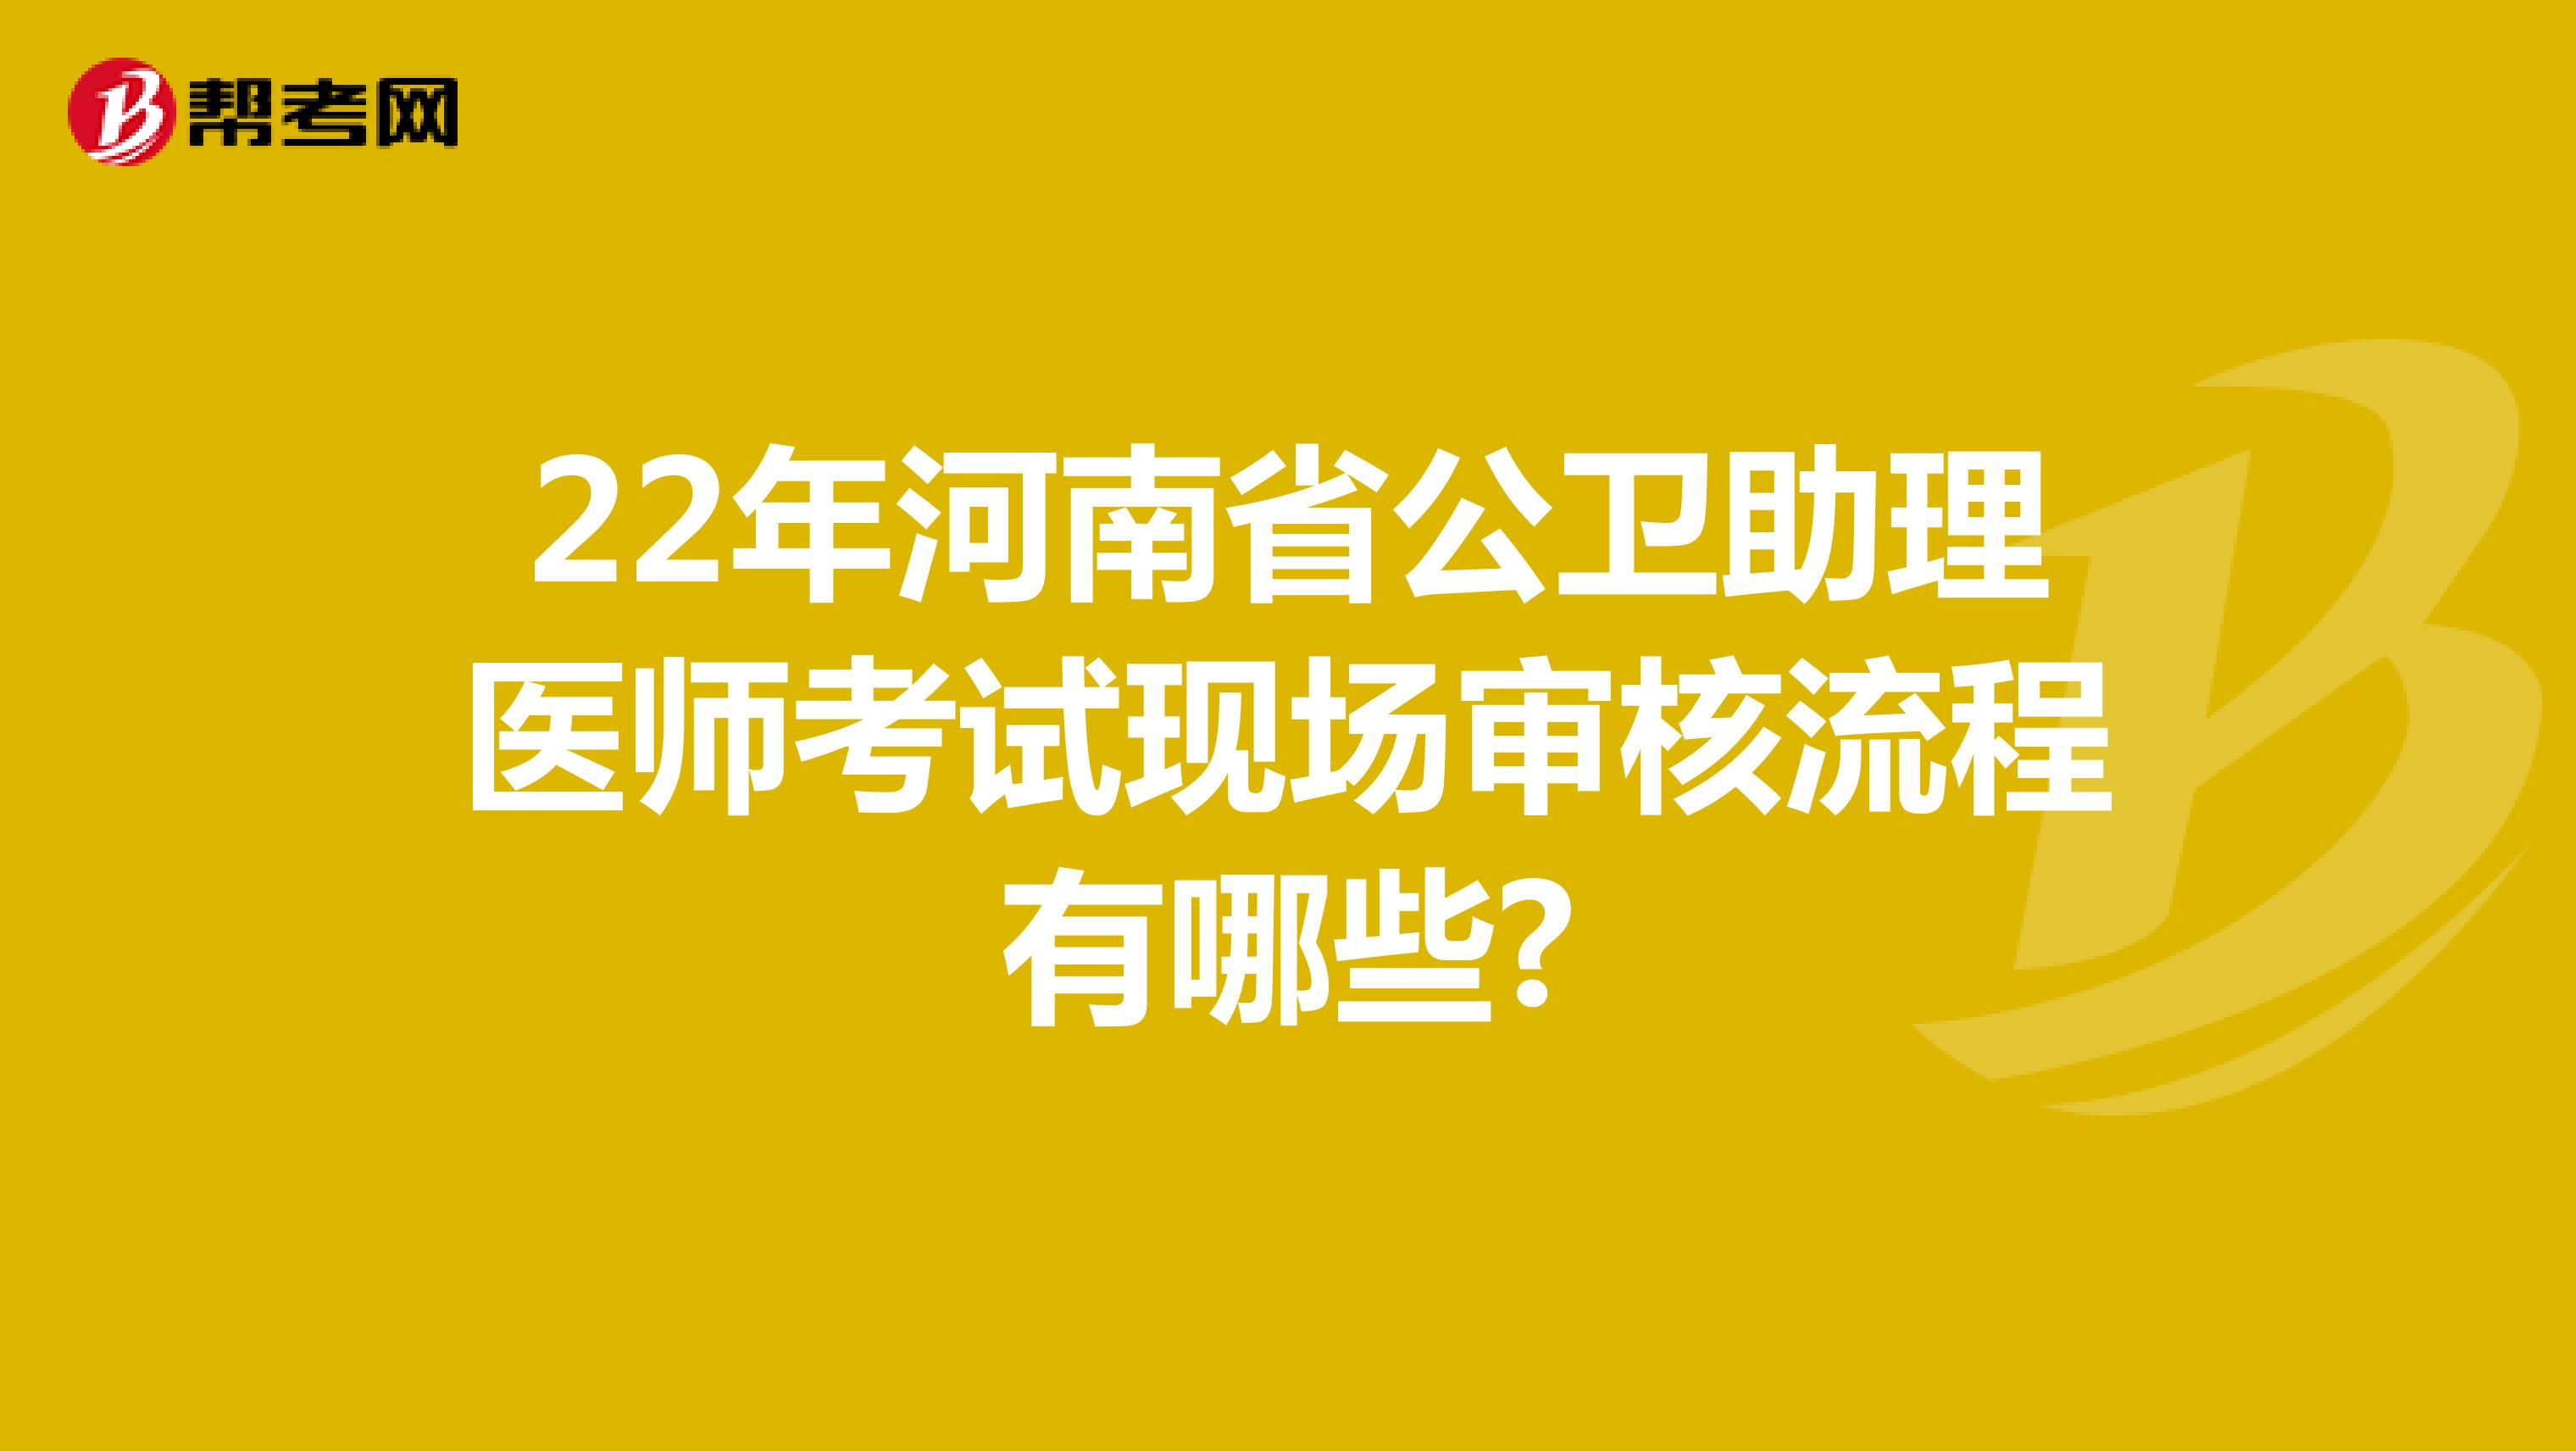 22年河南省公卫助理医师考试现场审核流程有哪些?